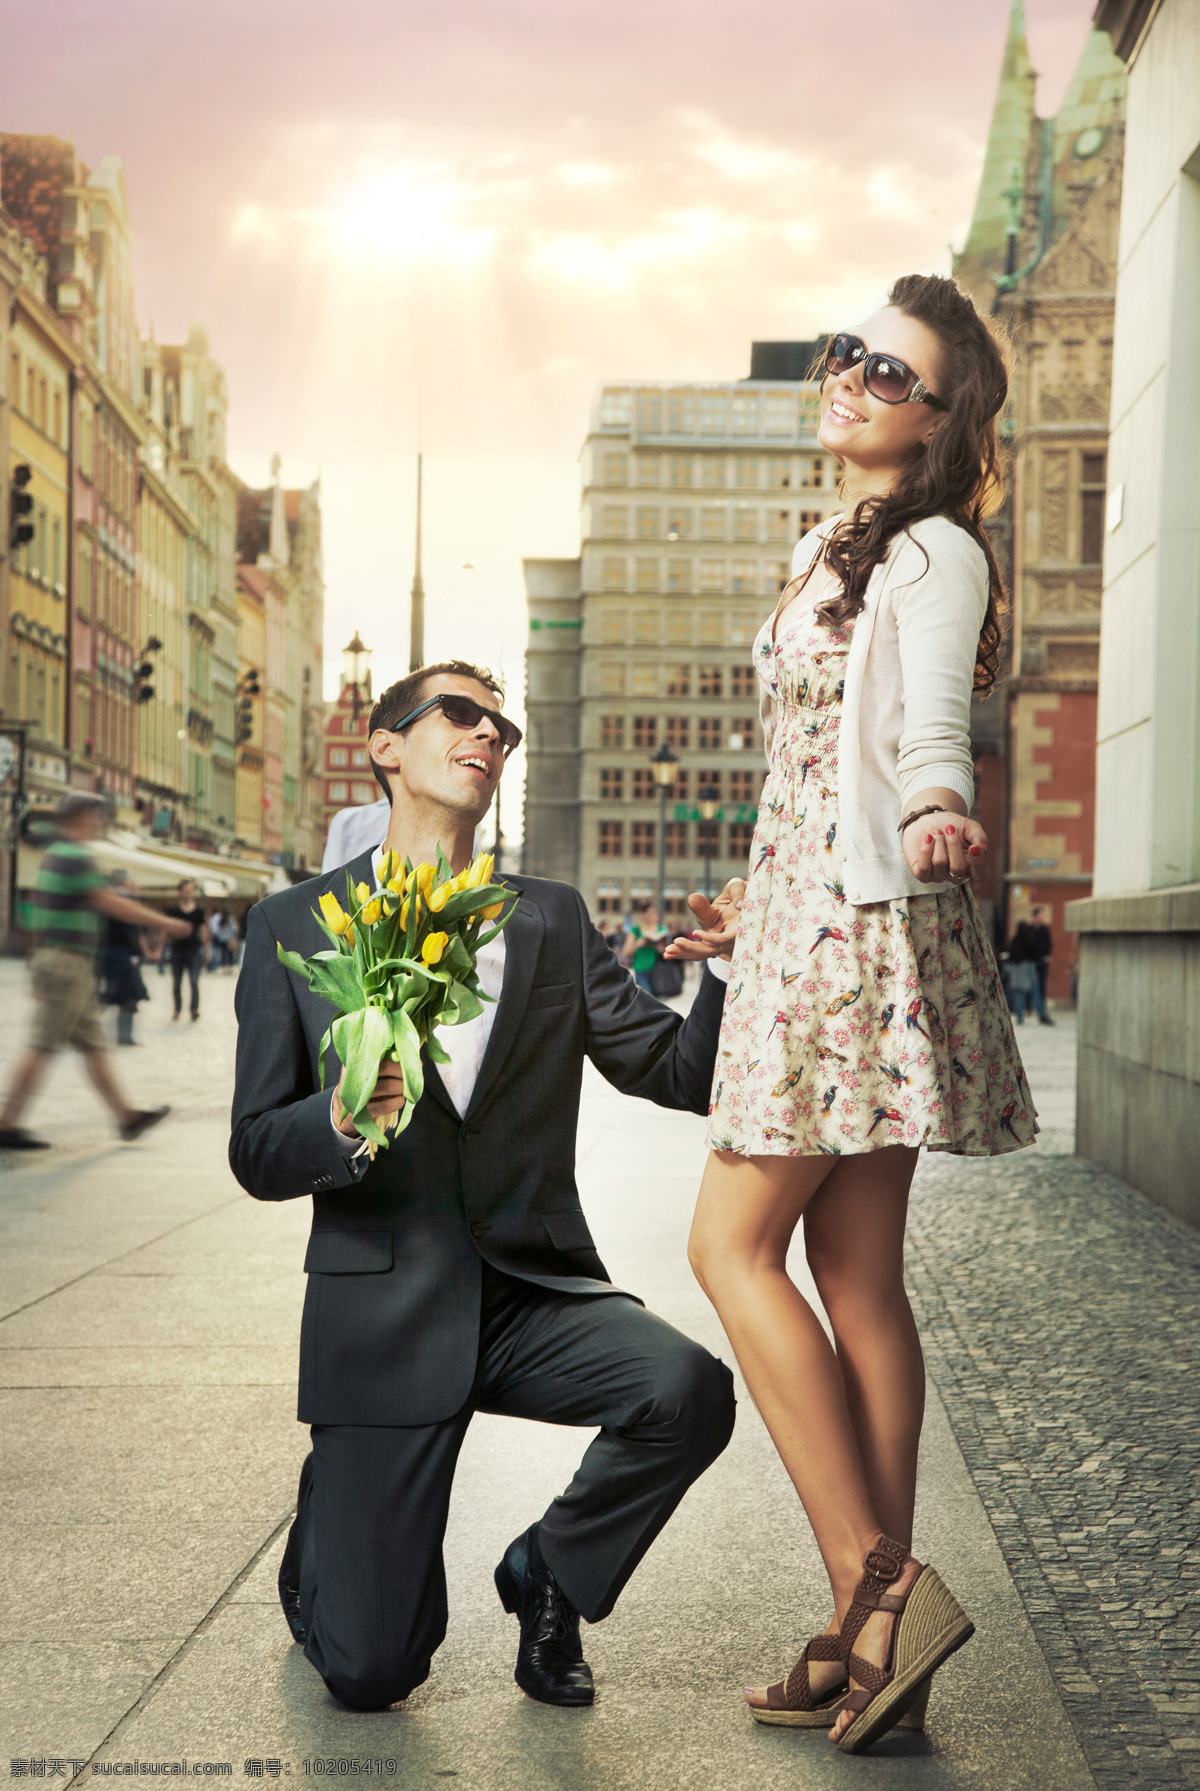 街道 上 幸福 情侣 高楼 建筑物 鲜花 求婚 行人 人物 情侣图片 人物图片